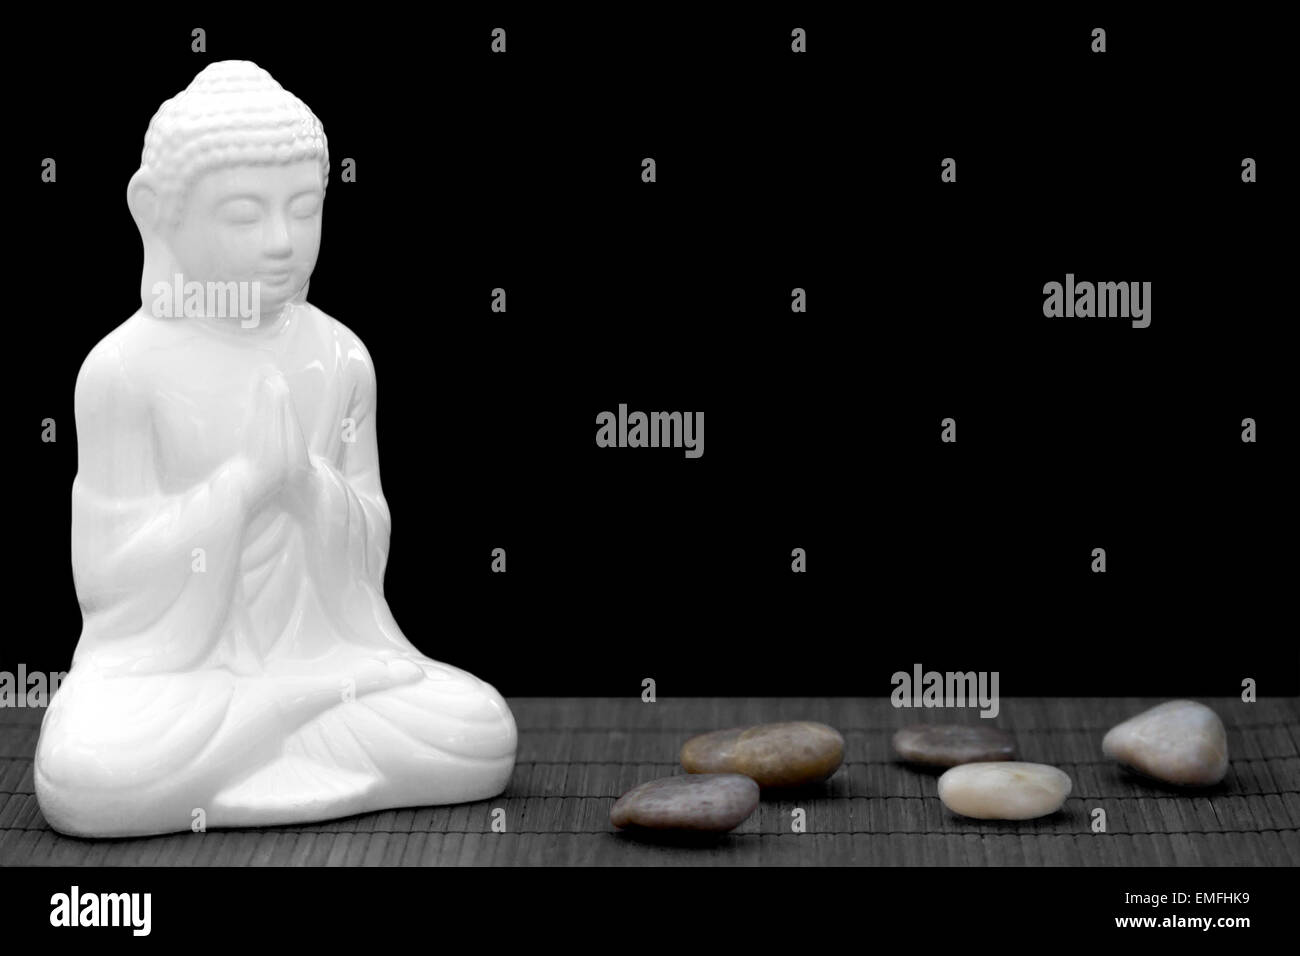 Figura blanca en pose de meditación con cantos rodados Foto de stock